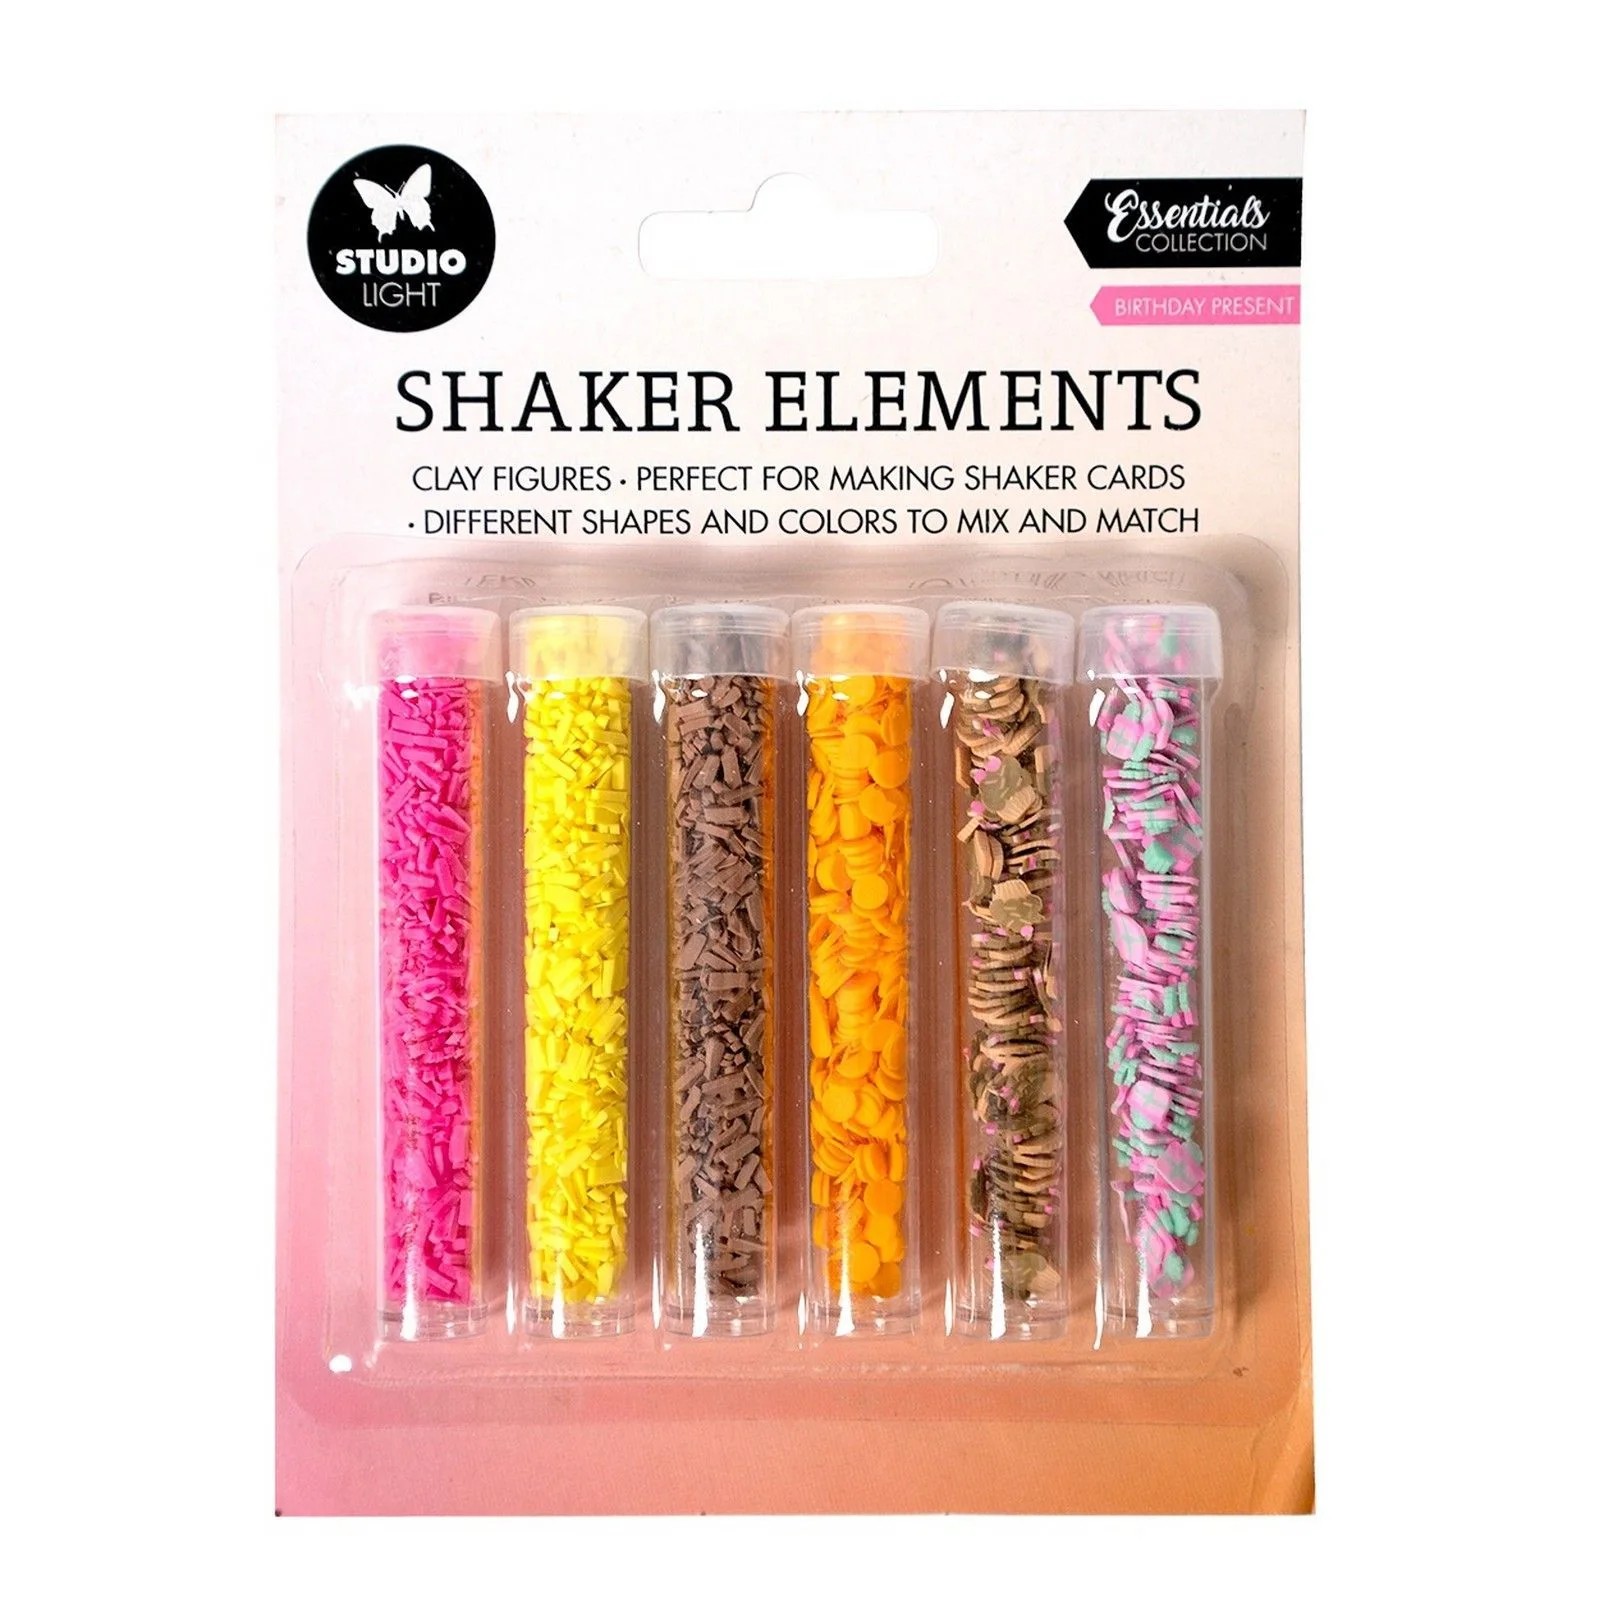 Bild 1 von Studio Light • Essentials Shaker Elements Birthday Present